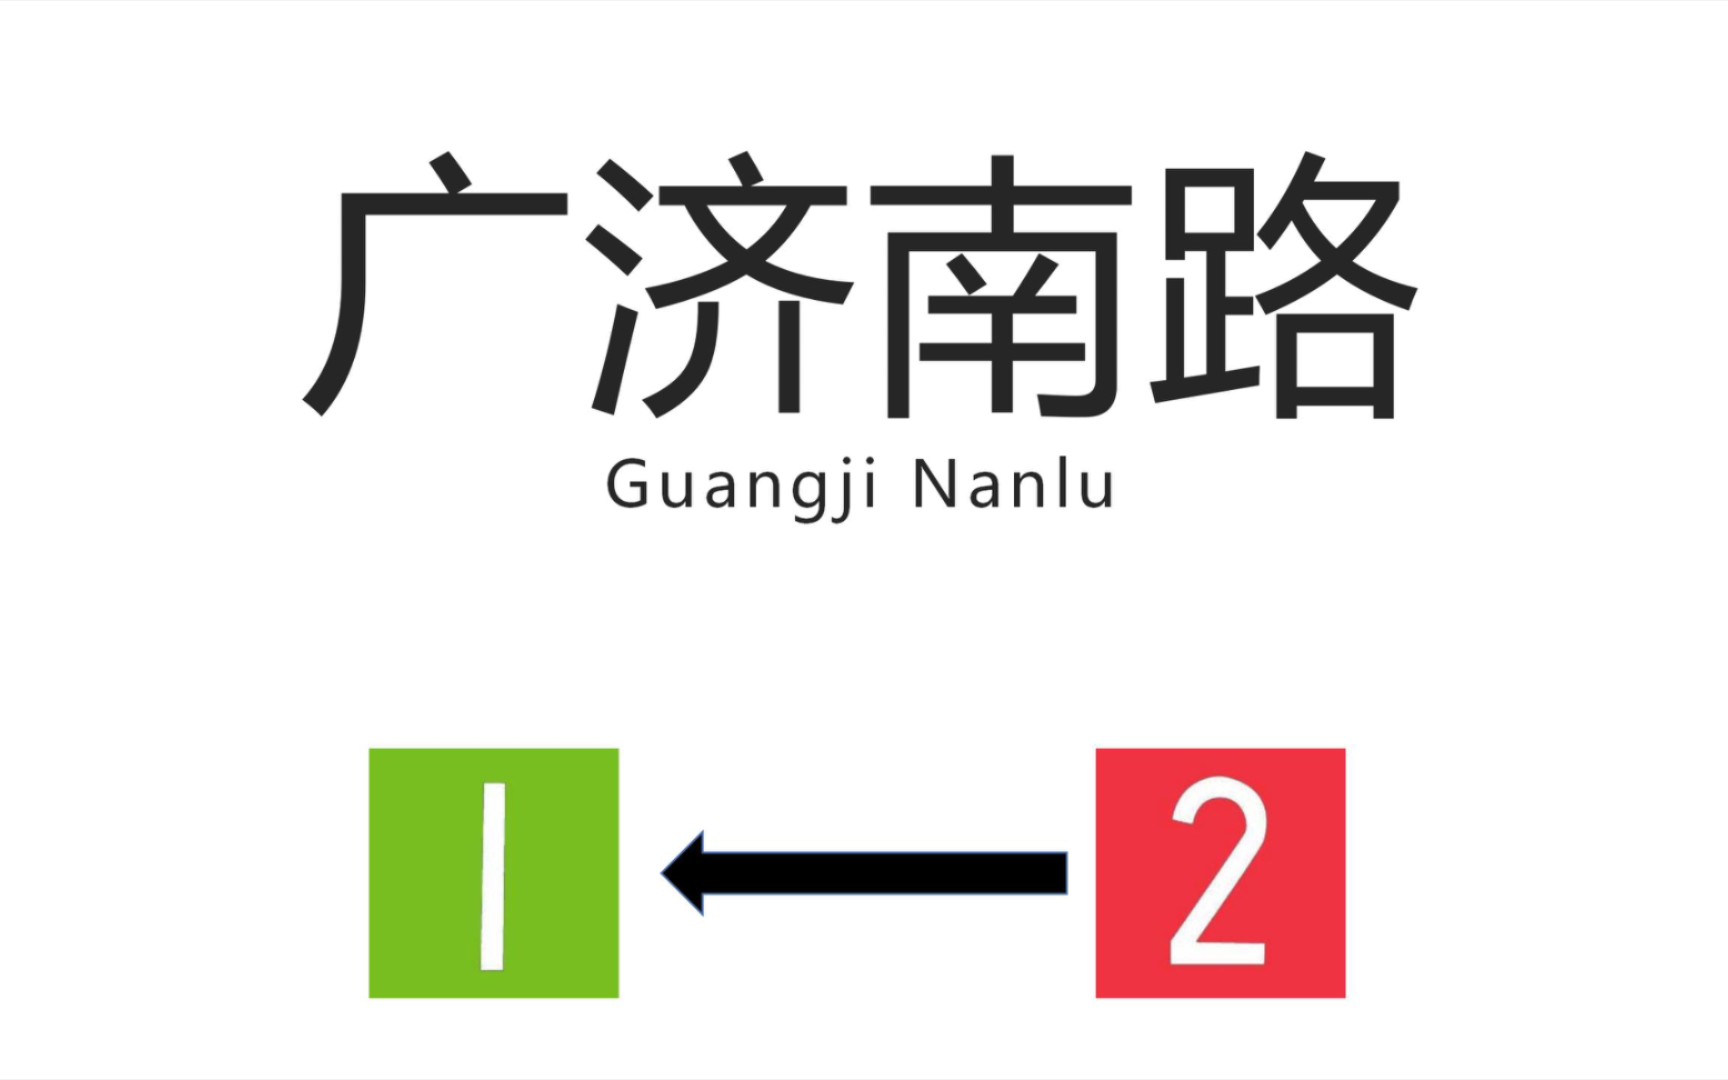 【苏州地铁换乘站】广济南路站(guangji nanlu station) 2号线→1号线